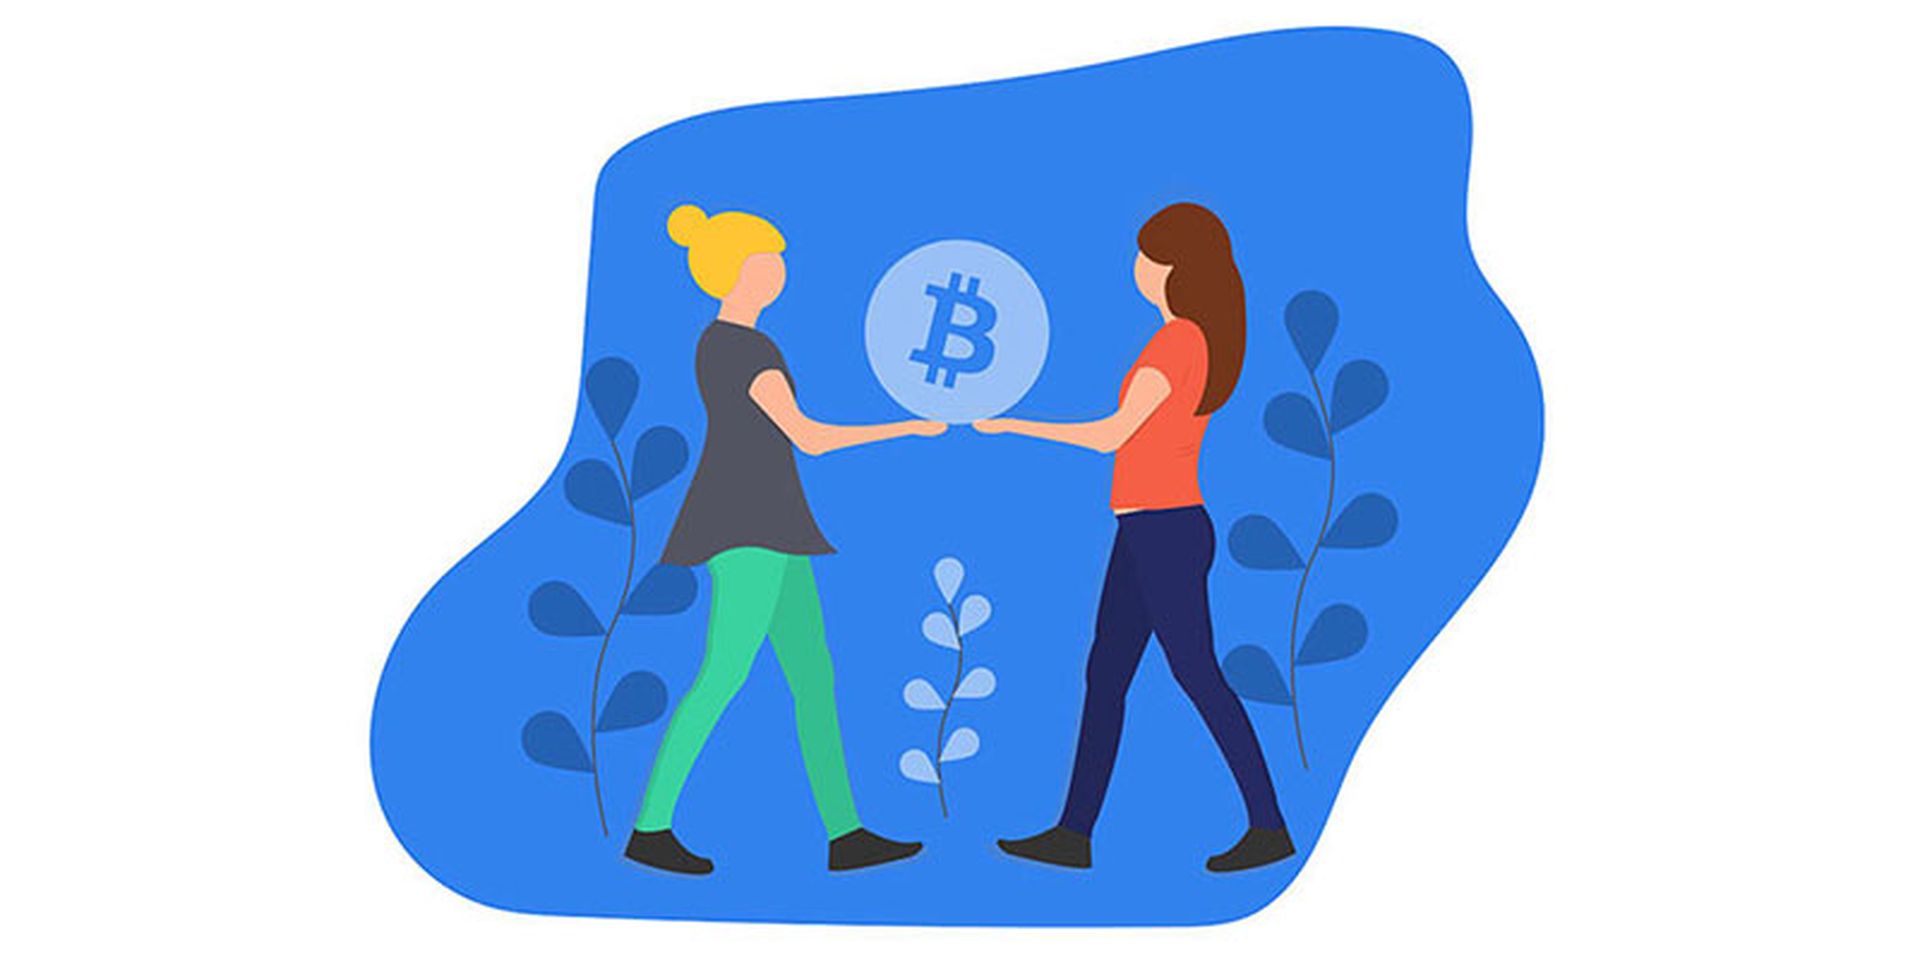 Bitcoin Illustration